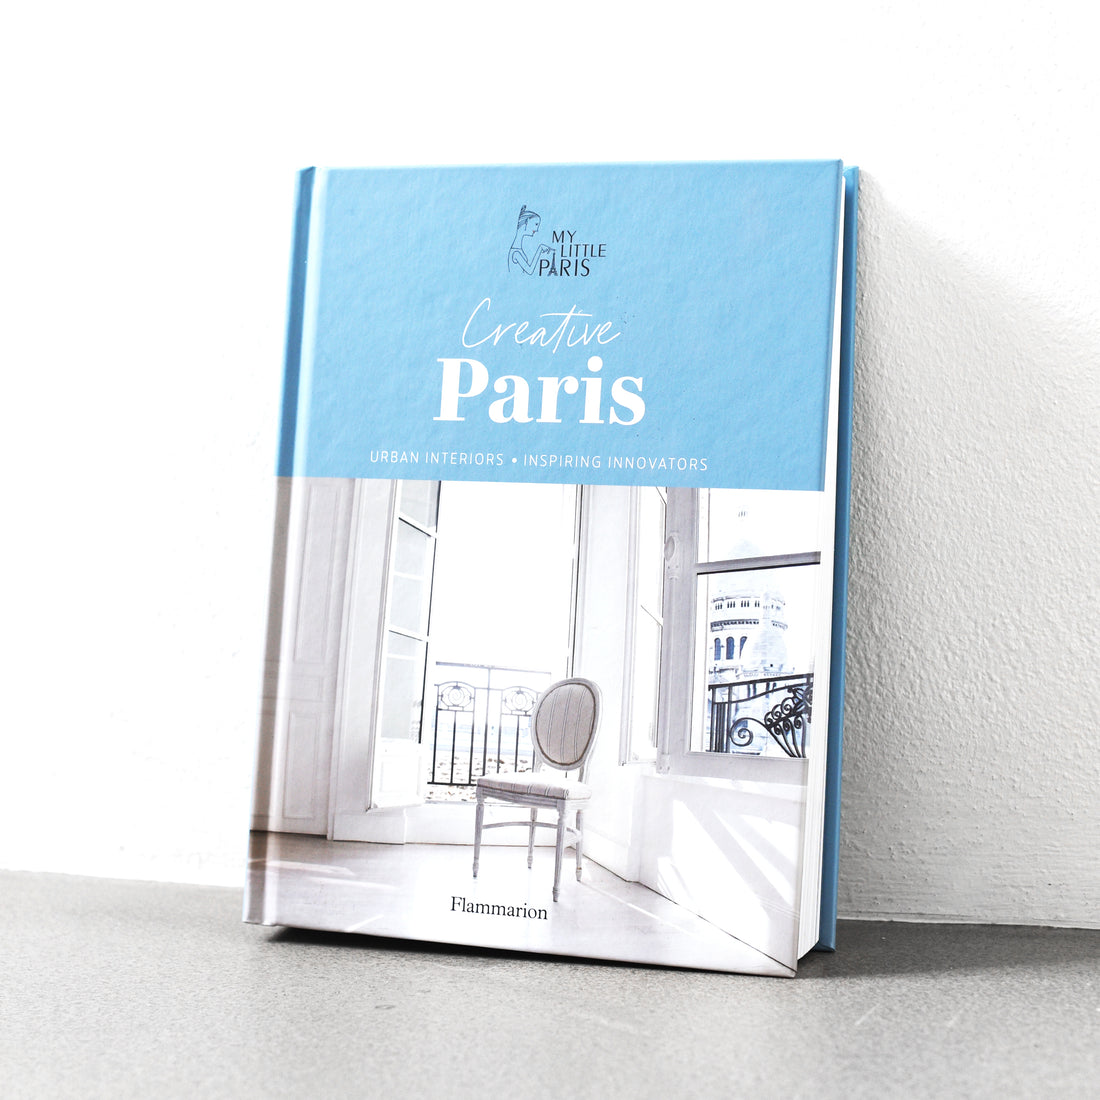 Kreatywny Paryż: Wnętrza miejskie, inspirujący innowatorzy